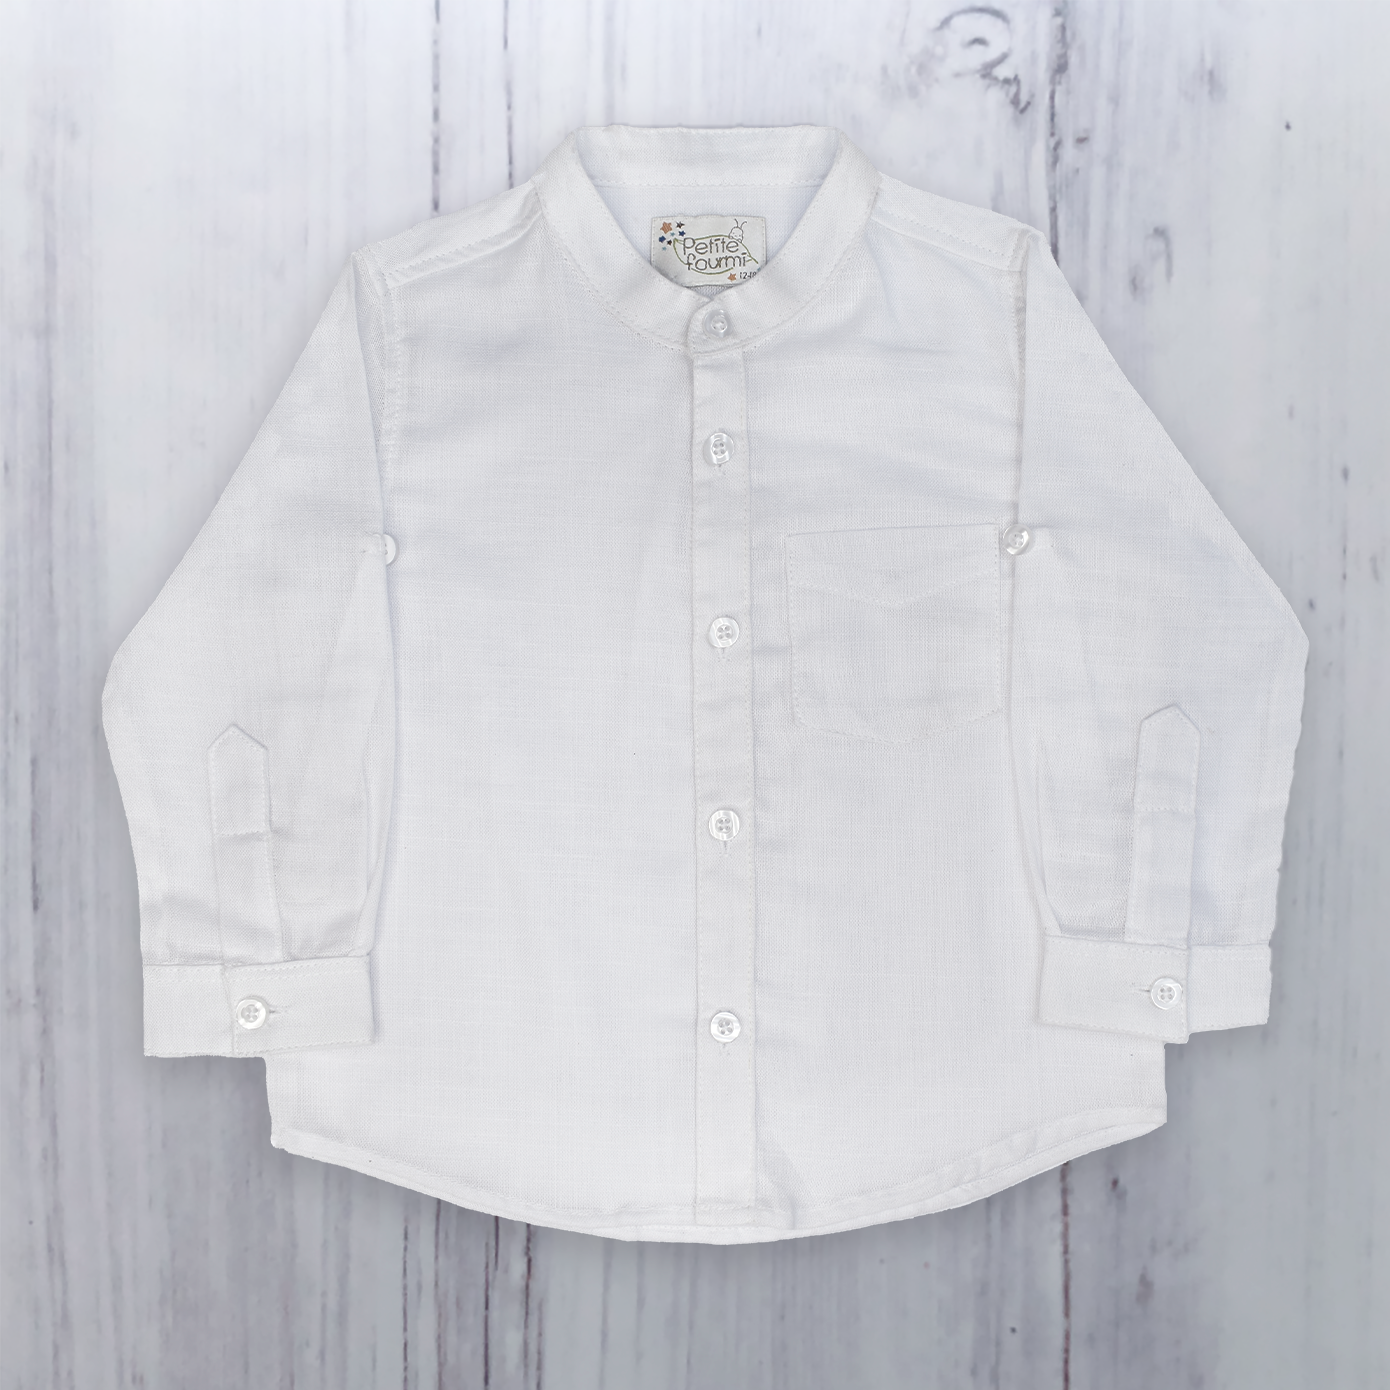 Petite Fourmi Camisa blanco Neru Jose